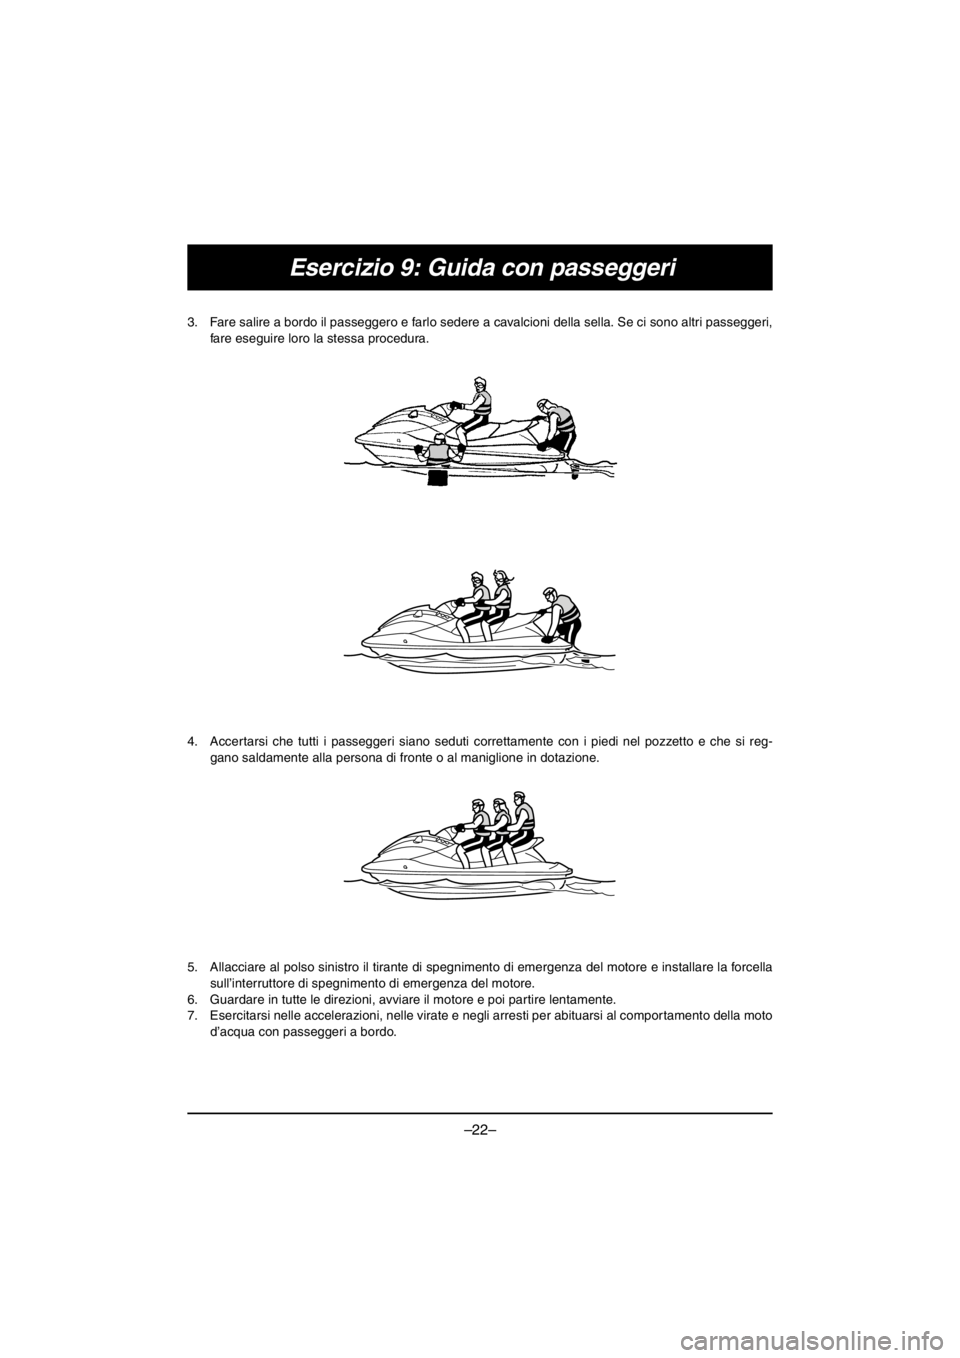 YAMAHA EX SPORT 2017  Owners Manual –22–
Esercizio 9: Guida con passeggeri
3. Fare salire a bordo il passeggero e farlo sedere a cavalcioni della sella. Se ci sono altri passeggeri,
fare eseguire loro la stessa procedura. 
4. Accert